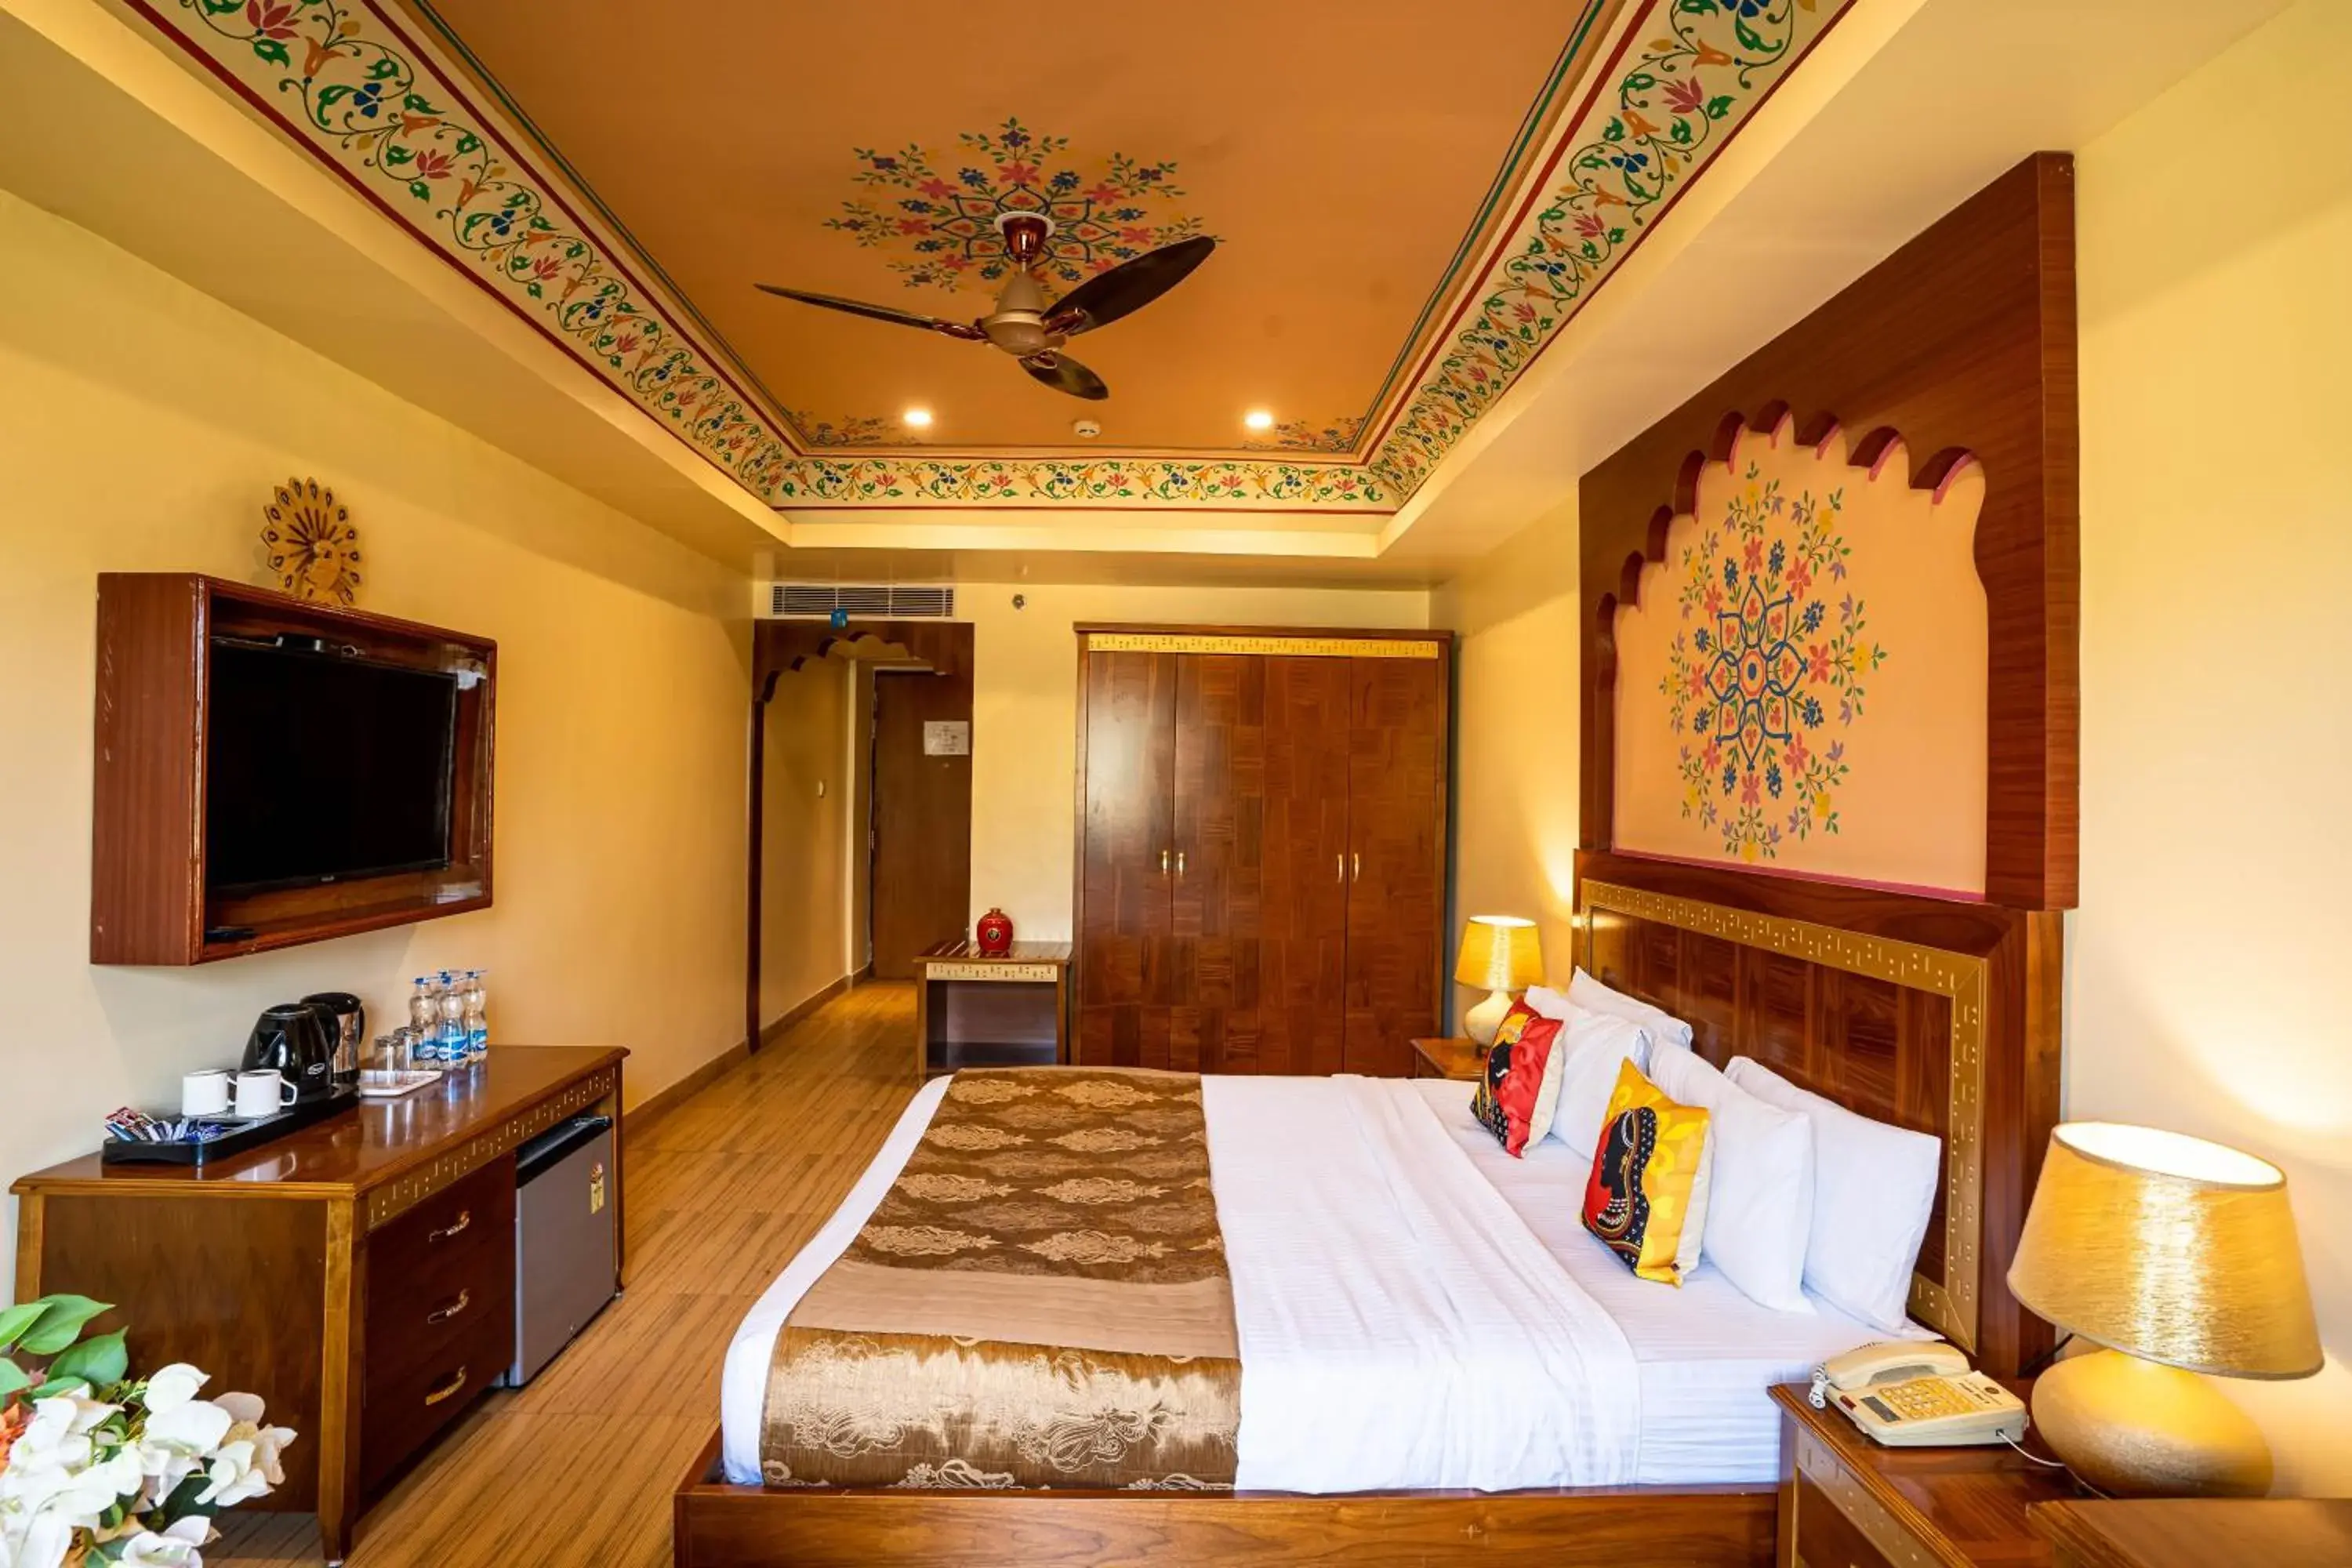 Chokhi Dhani - The Palace Hotel